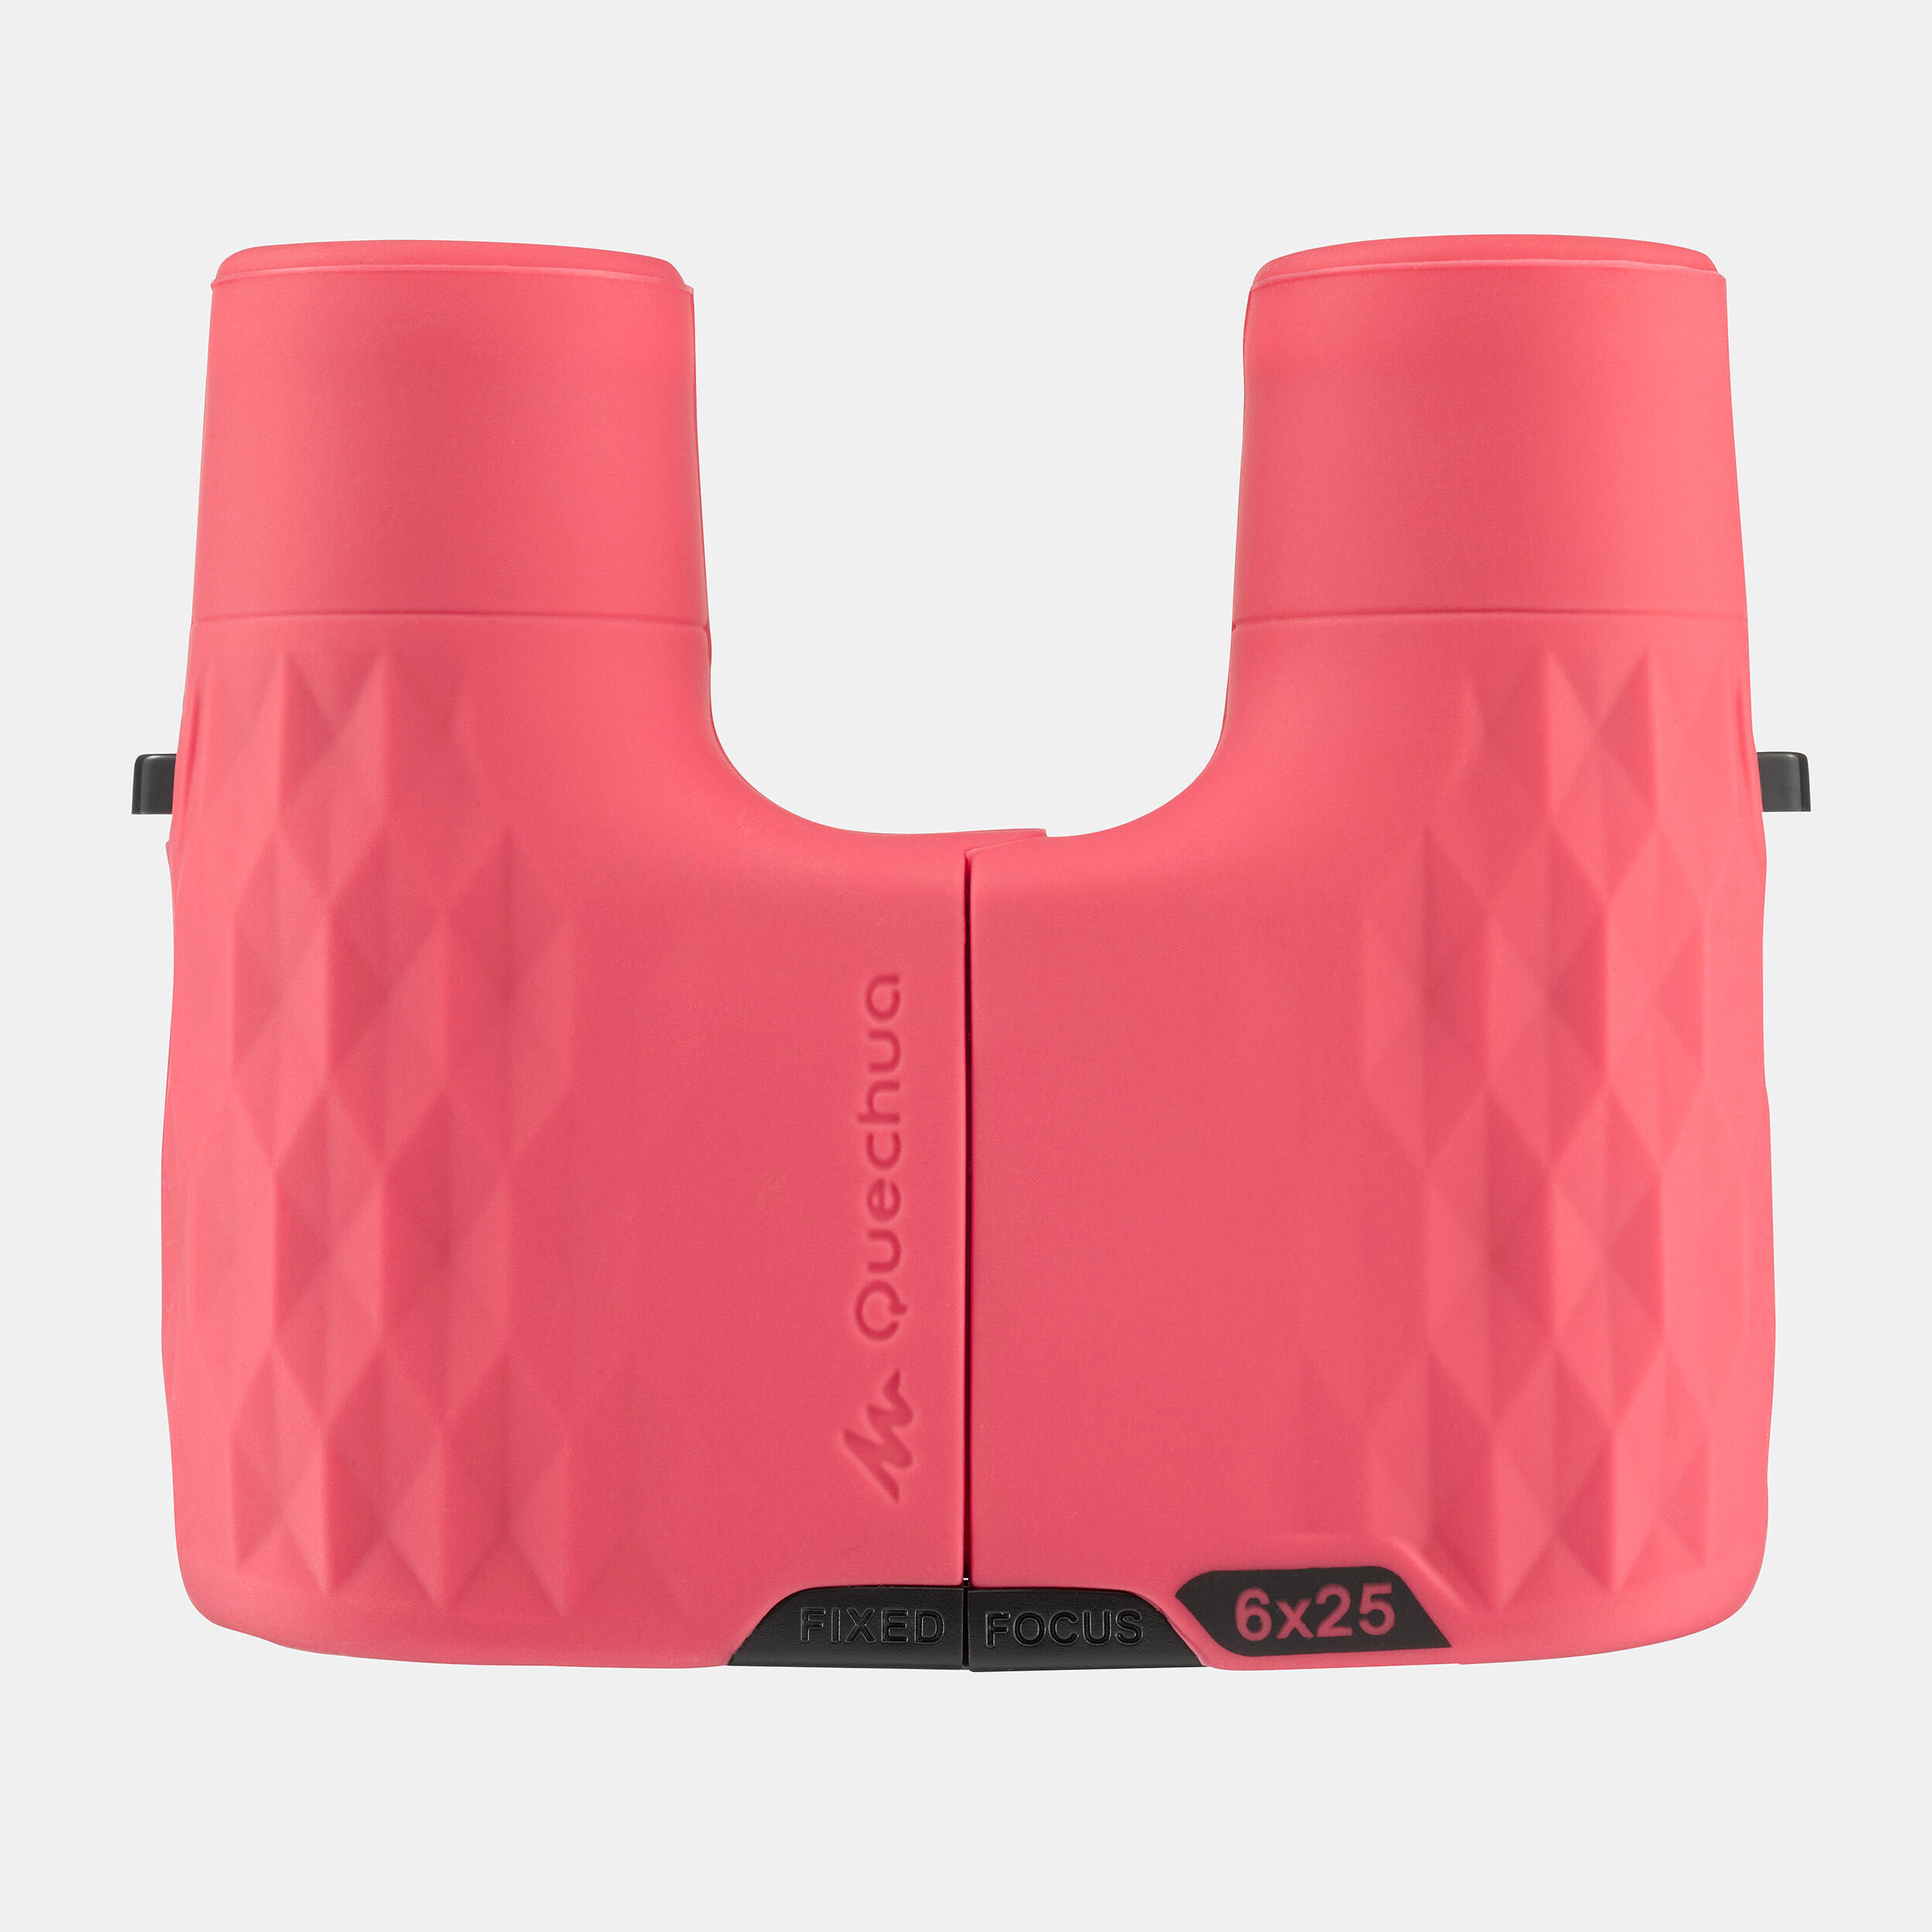 Kids' Hiking Focus-Free Binoculars MH B100 x6 Magnification - pink 3/4